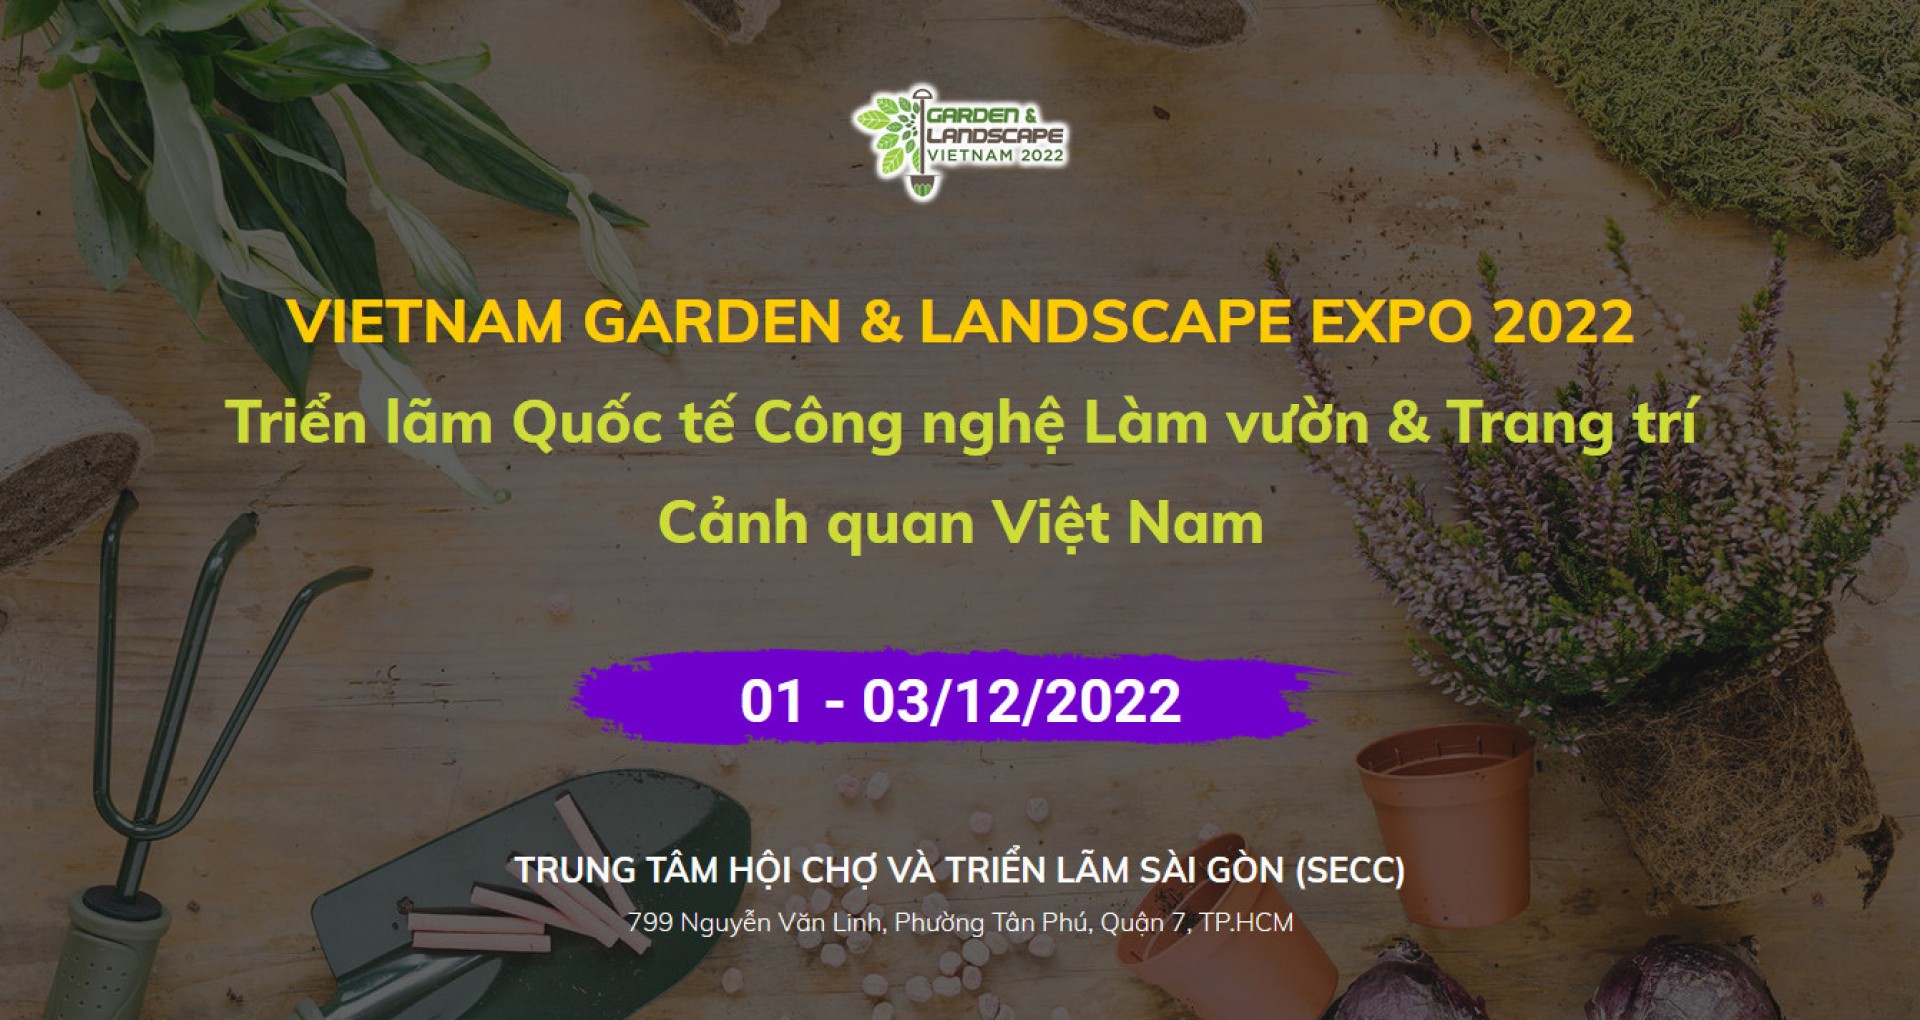 Vietnam Garden & Landscape Expo 2022 - Triển lãm Quốc tế Công nghệ Làm vườn & Trang trí Cảnh quan